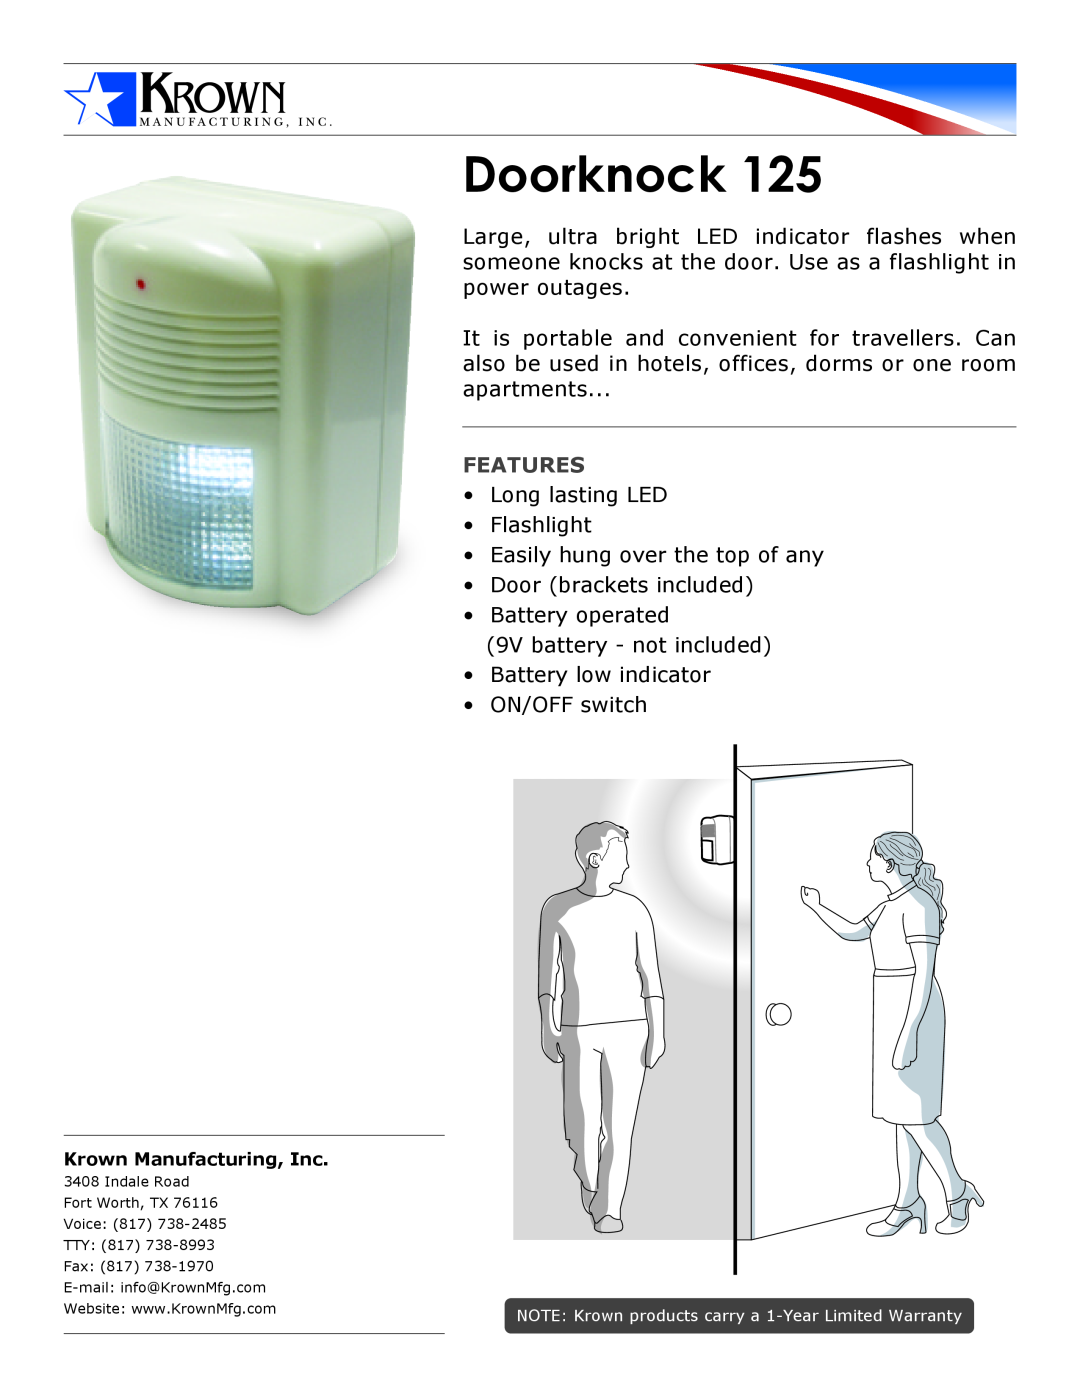 Krown Manufacturing 125 warranty Doorknock, Features 